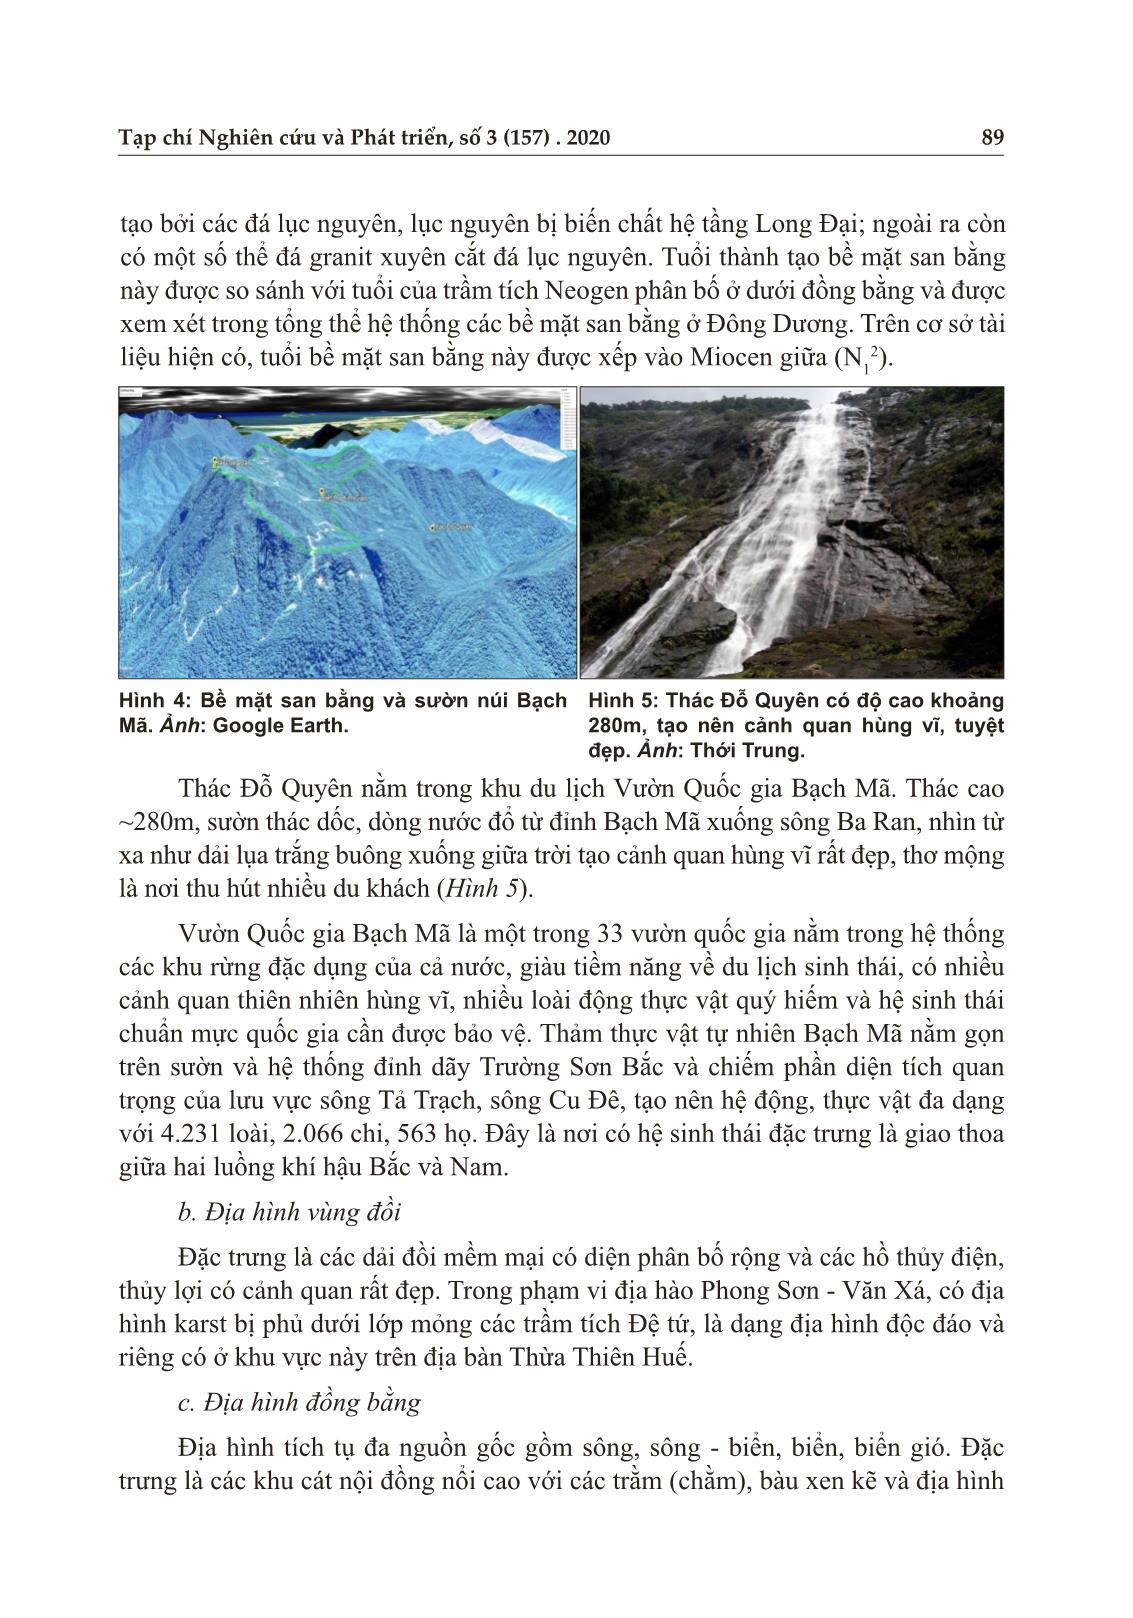 Sự đa dạng về địa chất, địa mạo và sinh học vùng Tam Giang - Bạch mã: cơ sở xây dựng công viên địa chất cho tỉnh Thừa Thiên Huế trang 6